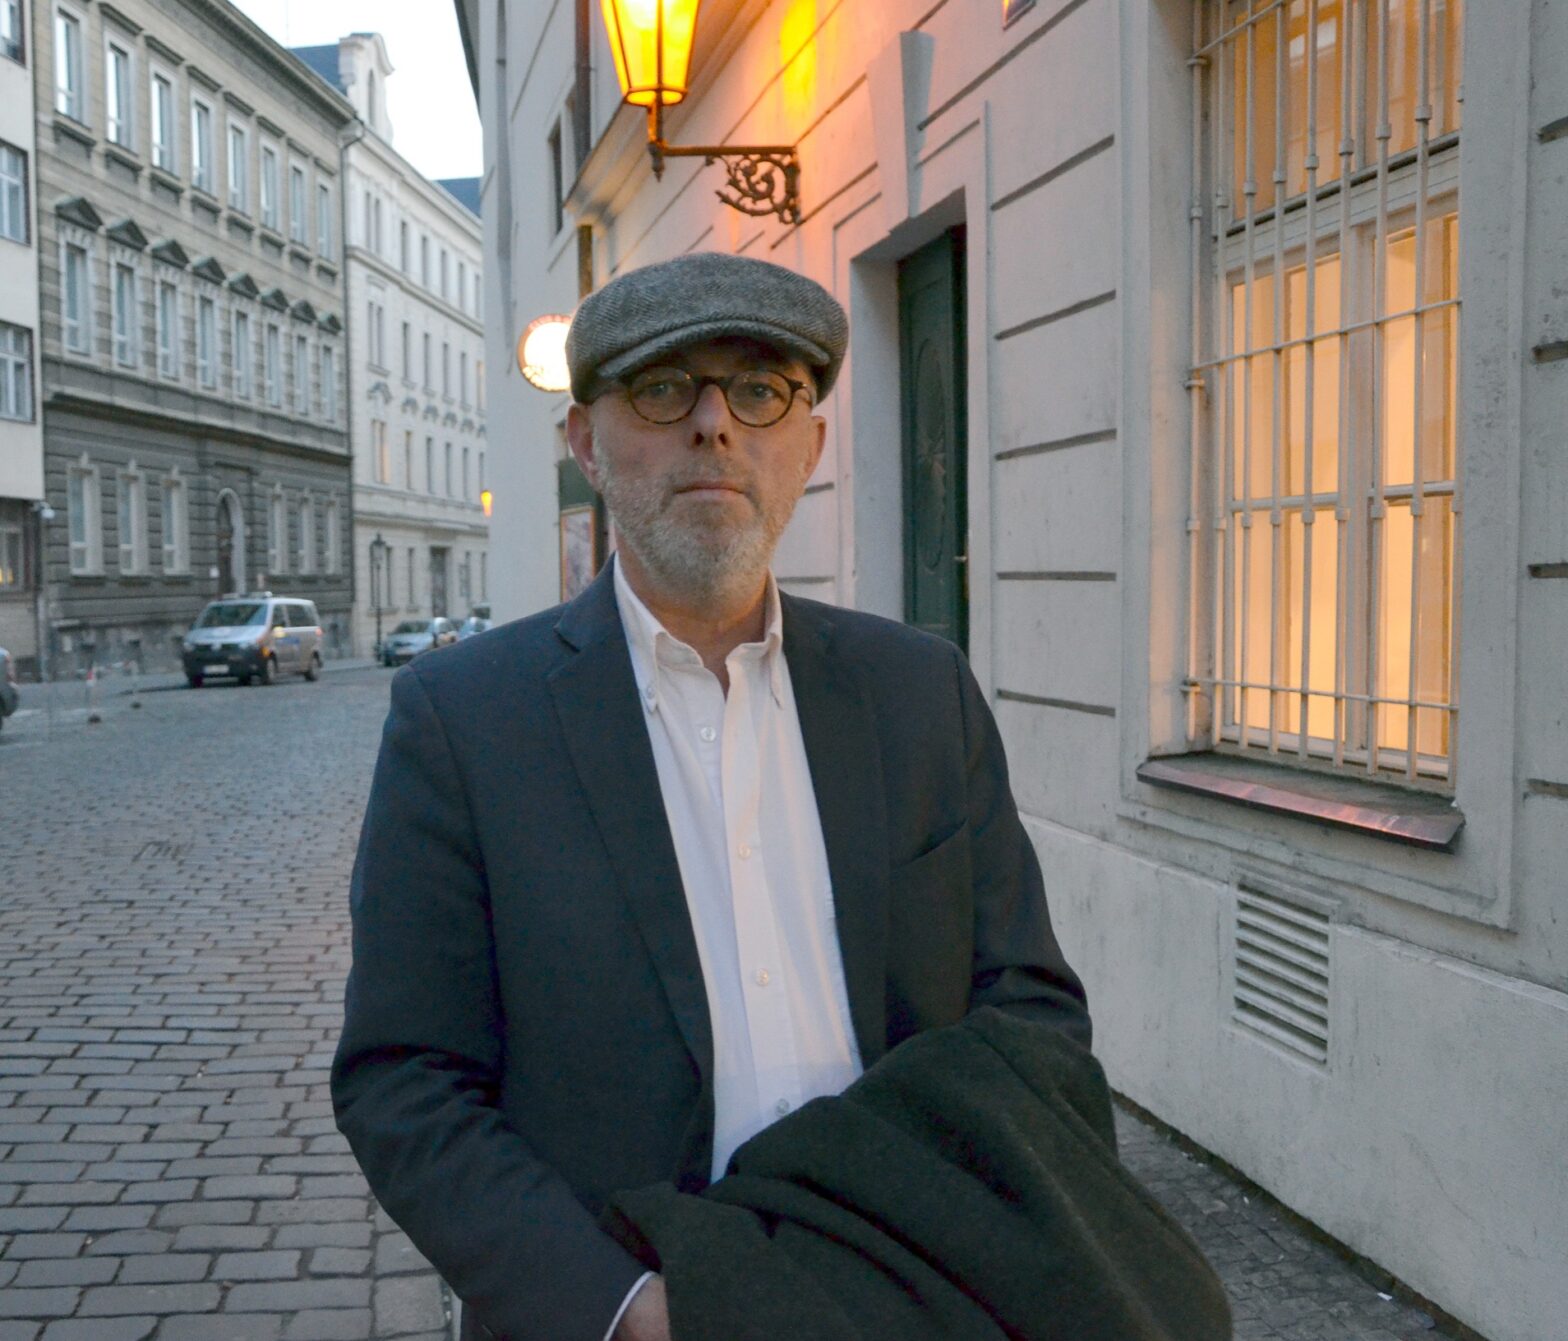 Foto: Jean Boué vor dem Prager Kino Ponrepo - Bild: LE/David Josiger